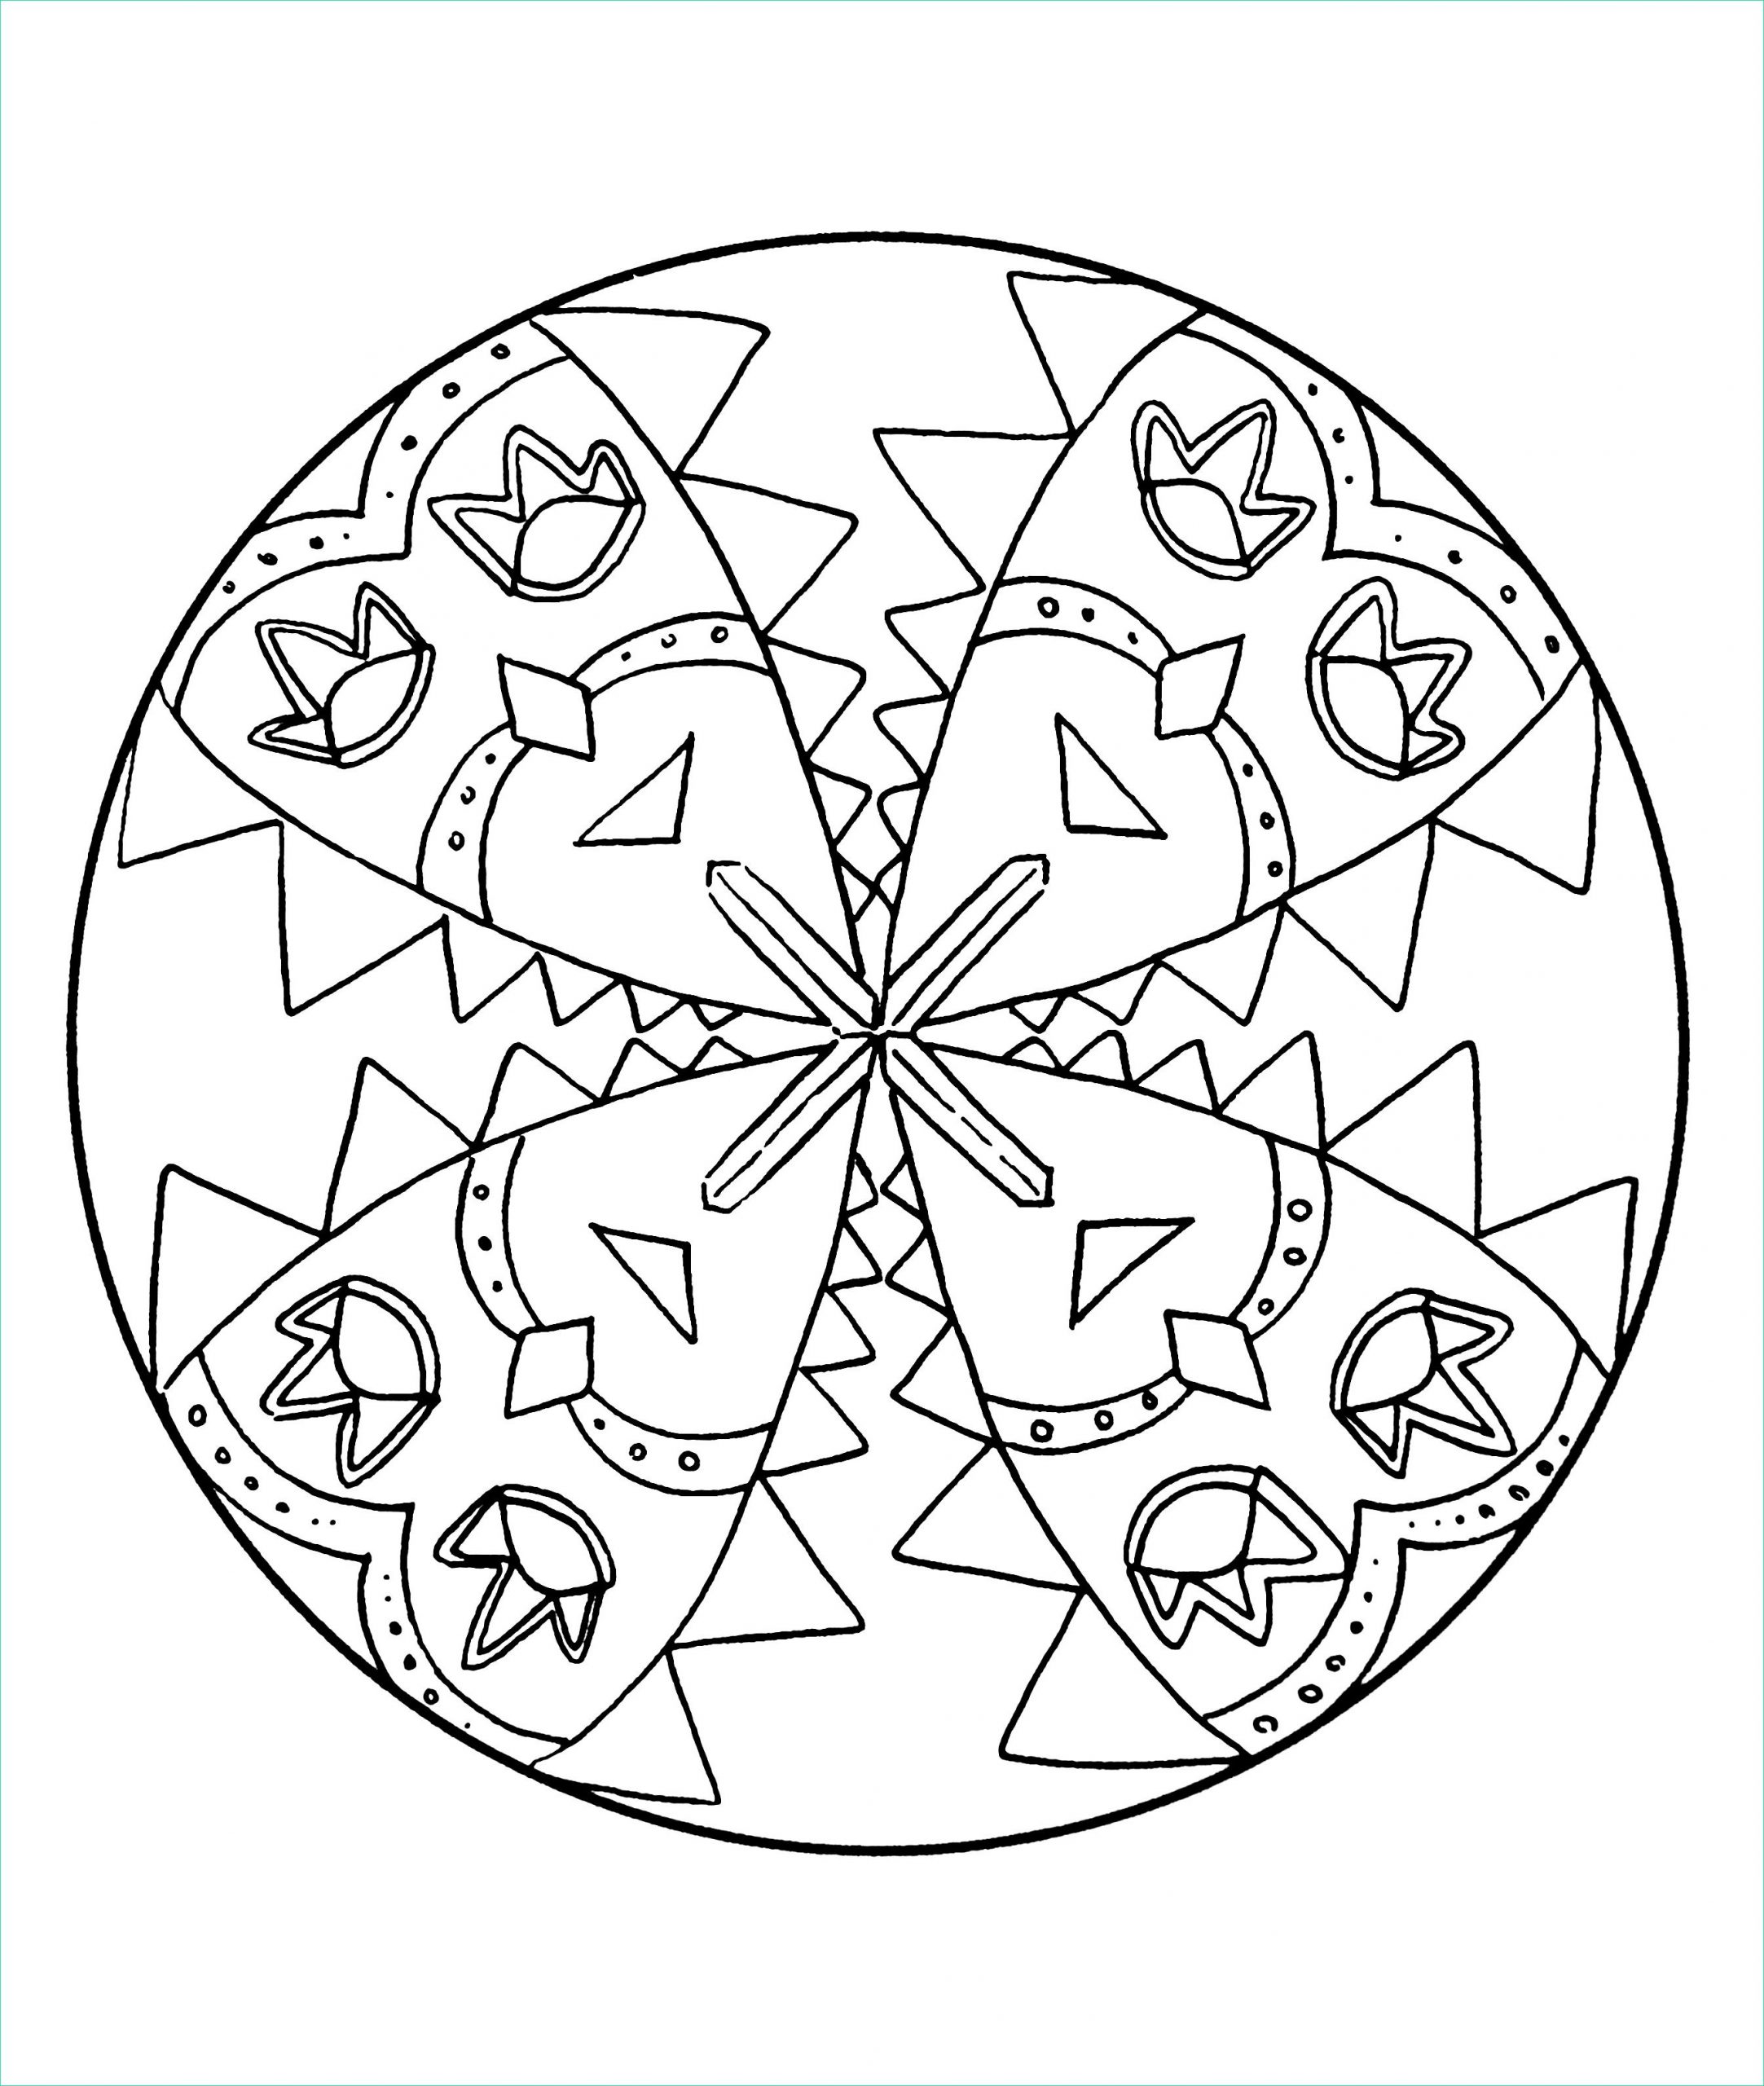 Mandala A Imprimer Unique Image Simple Mandala 25 M&amp;alas Coloring Pages for Kids to